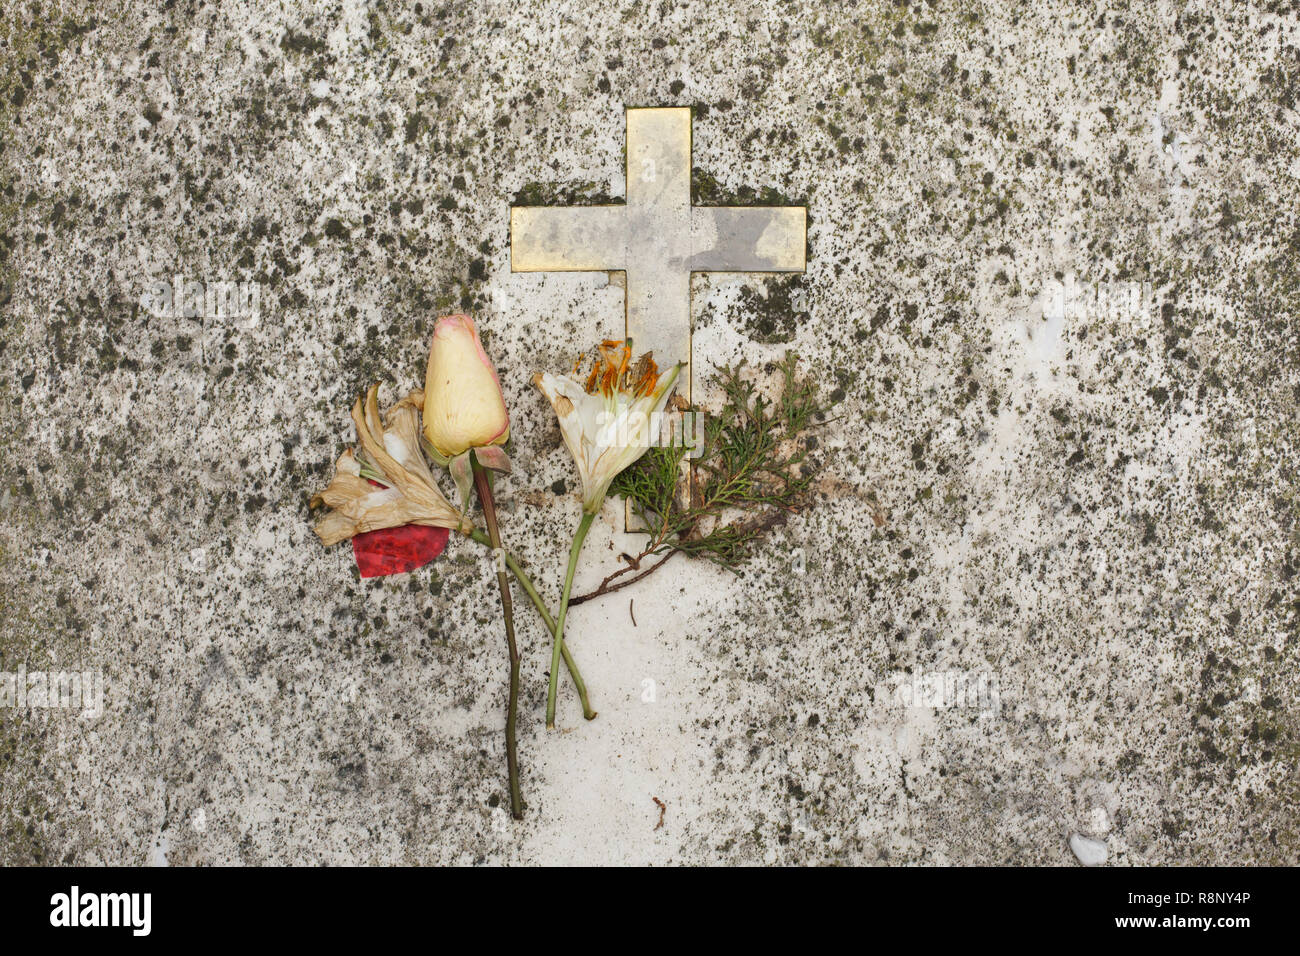 Kreuz und Blumen auf dem Grab von Russischen Schauspielerin Vera Stravinsky, geb. Vera de Bosset (1889-1982) an der griechisch-orthodoxen Friedhof auf San Michele Insel (Isola di San Michele) in Venedig, Italien. Vera Strawinski war die zweite Frau des russischen Komponisten Igor Strawinsky, der in der Nähe begraben. Stockfoto